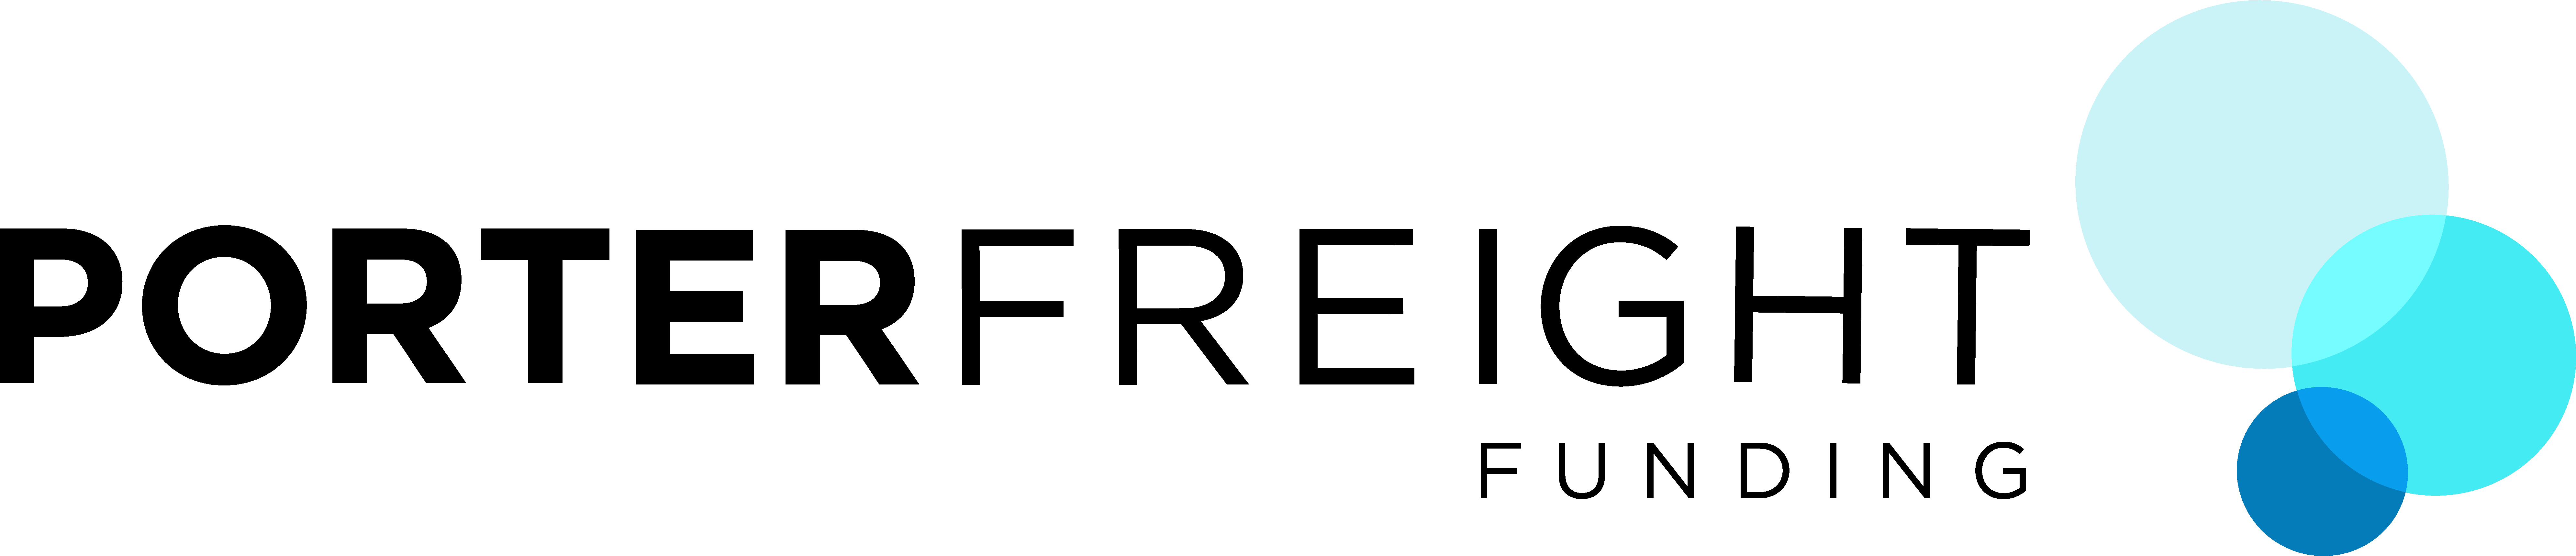 Porter Freight Logo